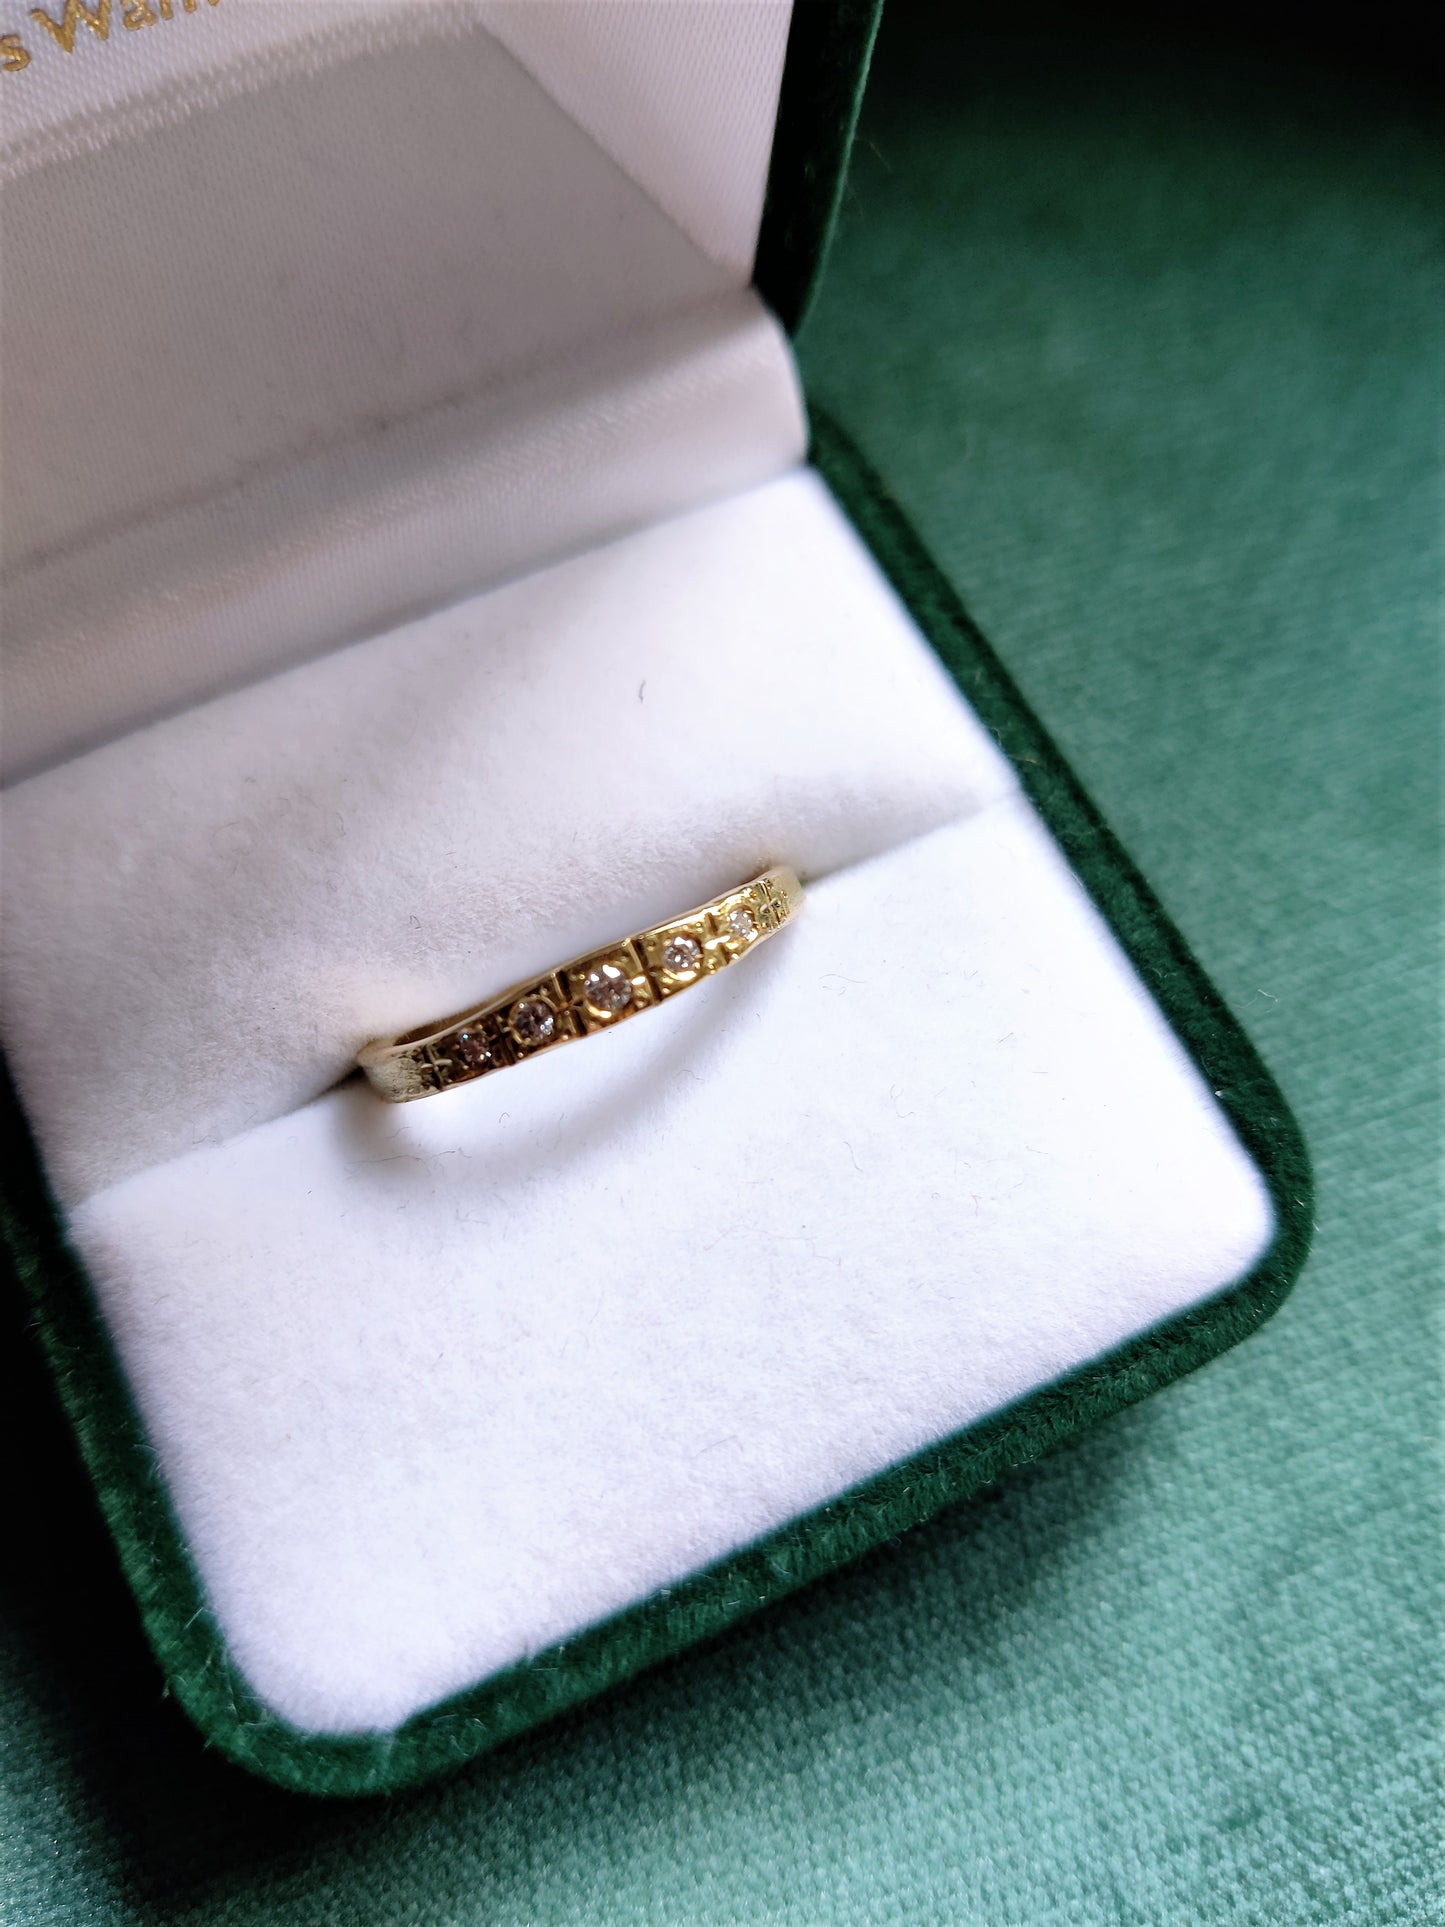 Smalle ring in 18k geel goud met witte diamanten. De ring lijkt wel uit de art deco tijd te komen. Het is een geel gouden ring met allemaal lijntjes met de hand in gegraveerd. Deze ring kan perfect als trouwring of als ring om bij andere ringen gedragen te worden. 